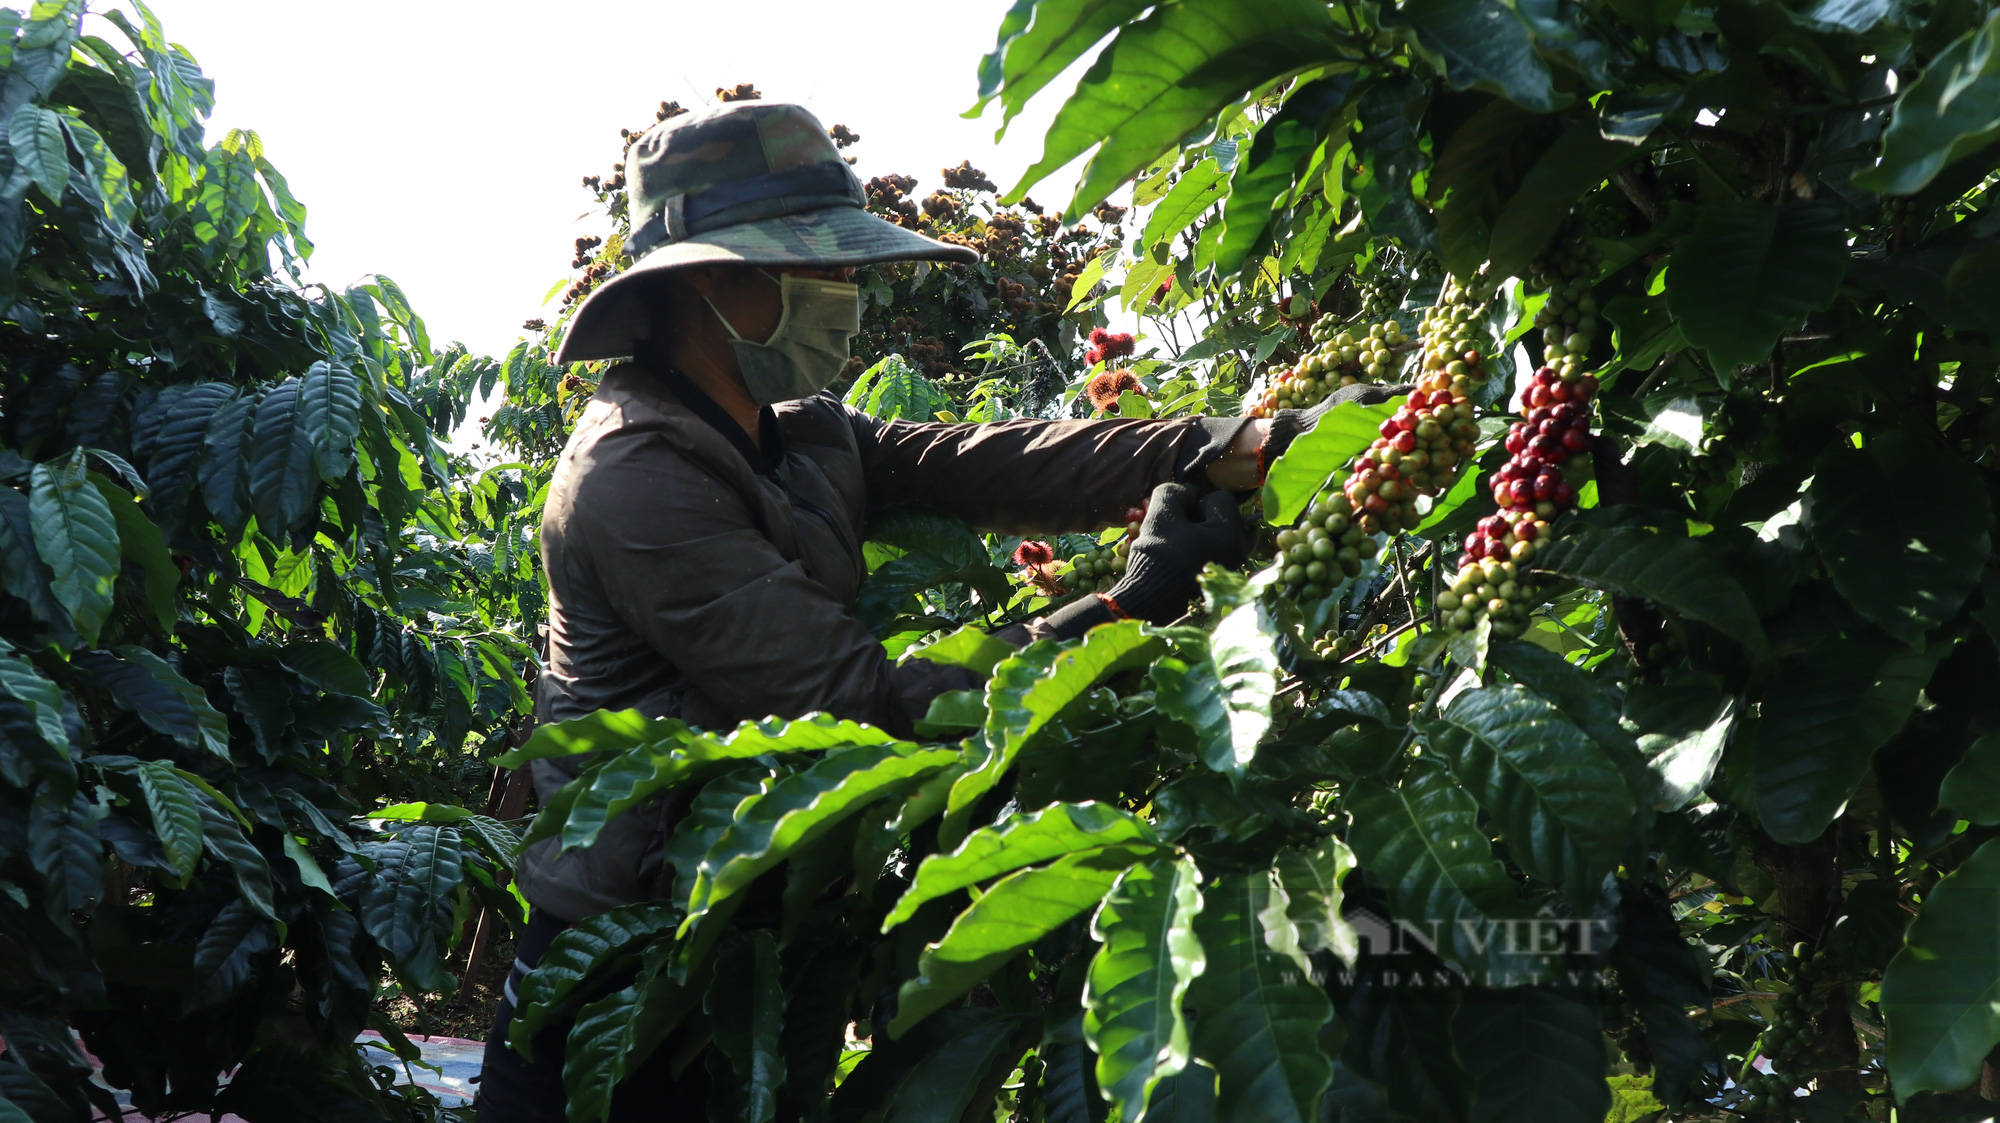 “Khan hiếm” nhân công thu hoạch, người hái cà phê khoán kiếm 500.000-700.000 đồng mỗi ngày - Ảnh 6.